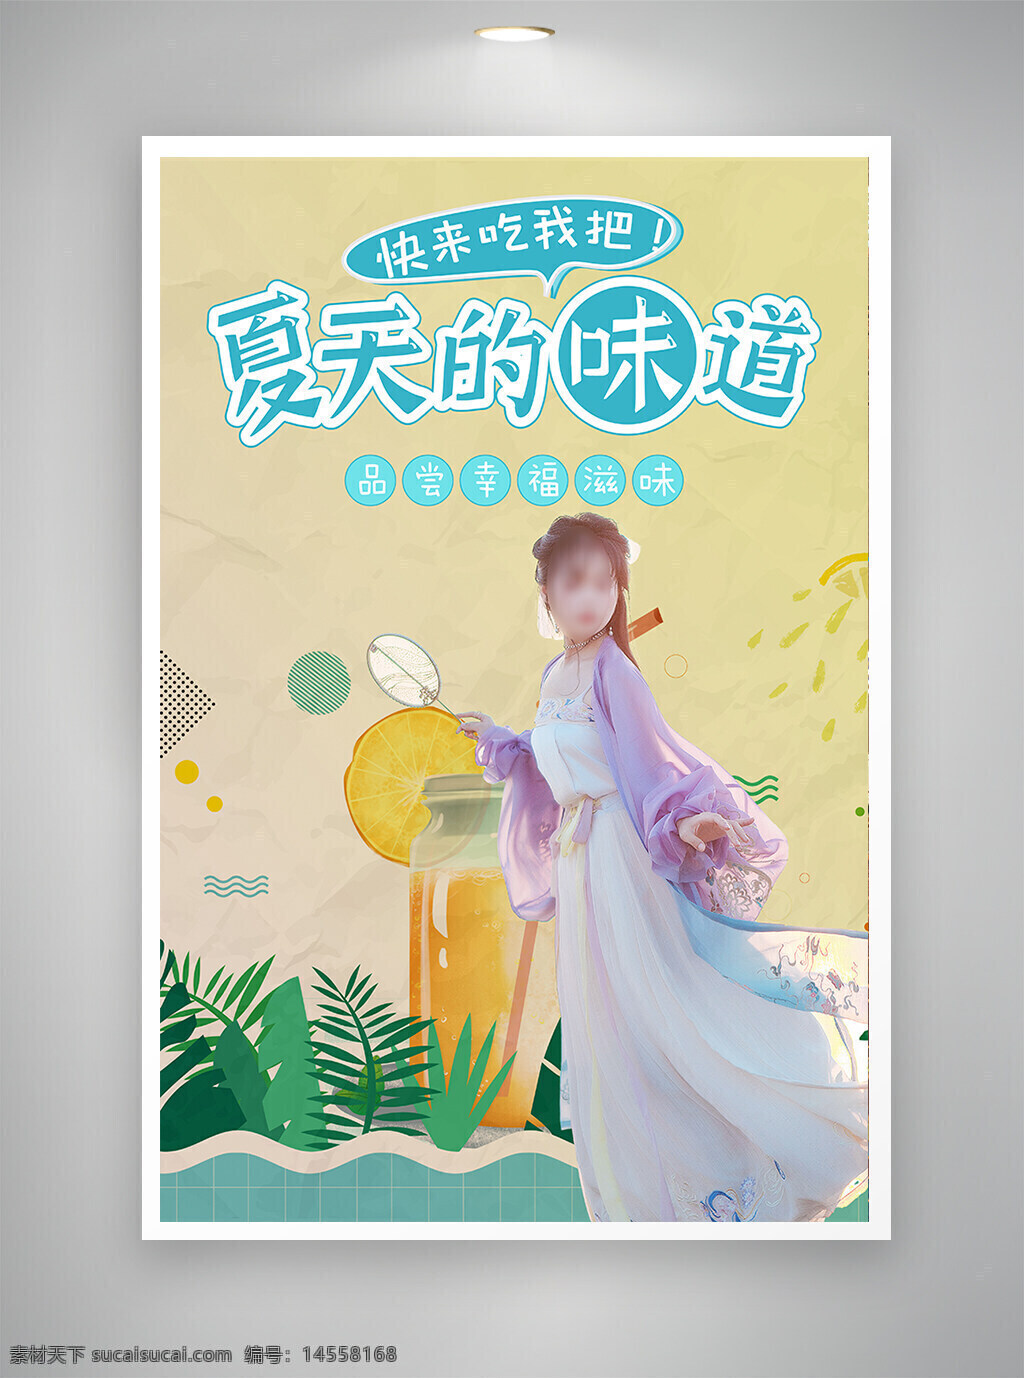 中国风海报 古风海报 促销海报 节日海报 夏天味道